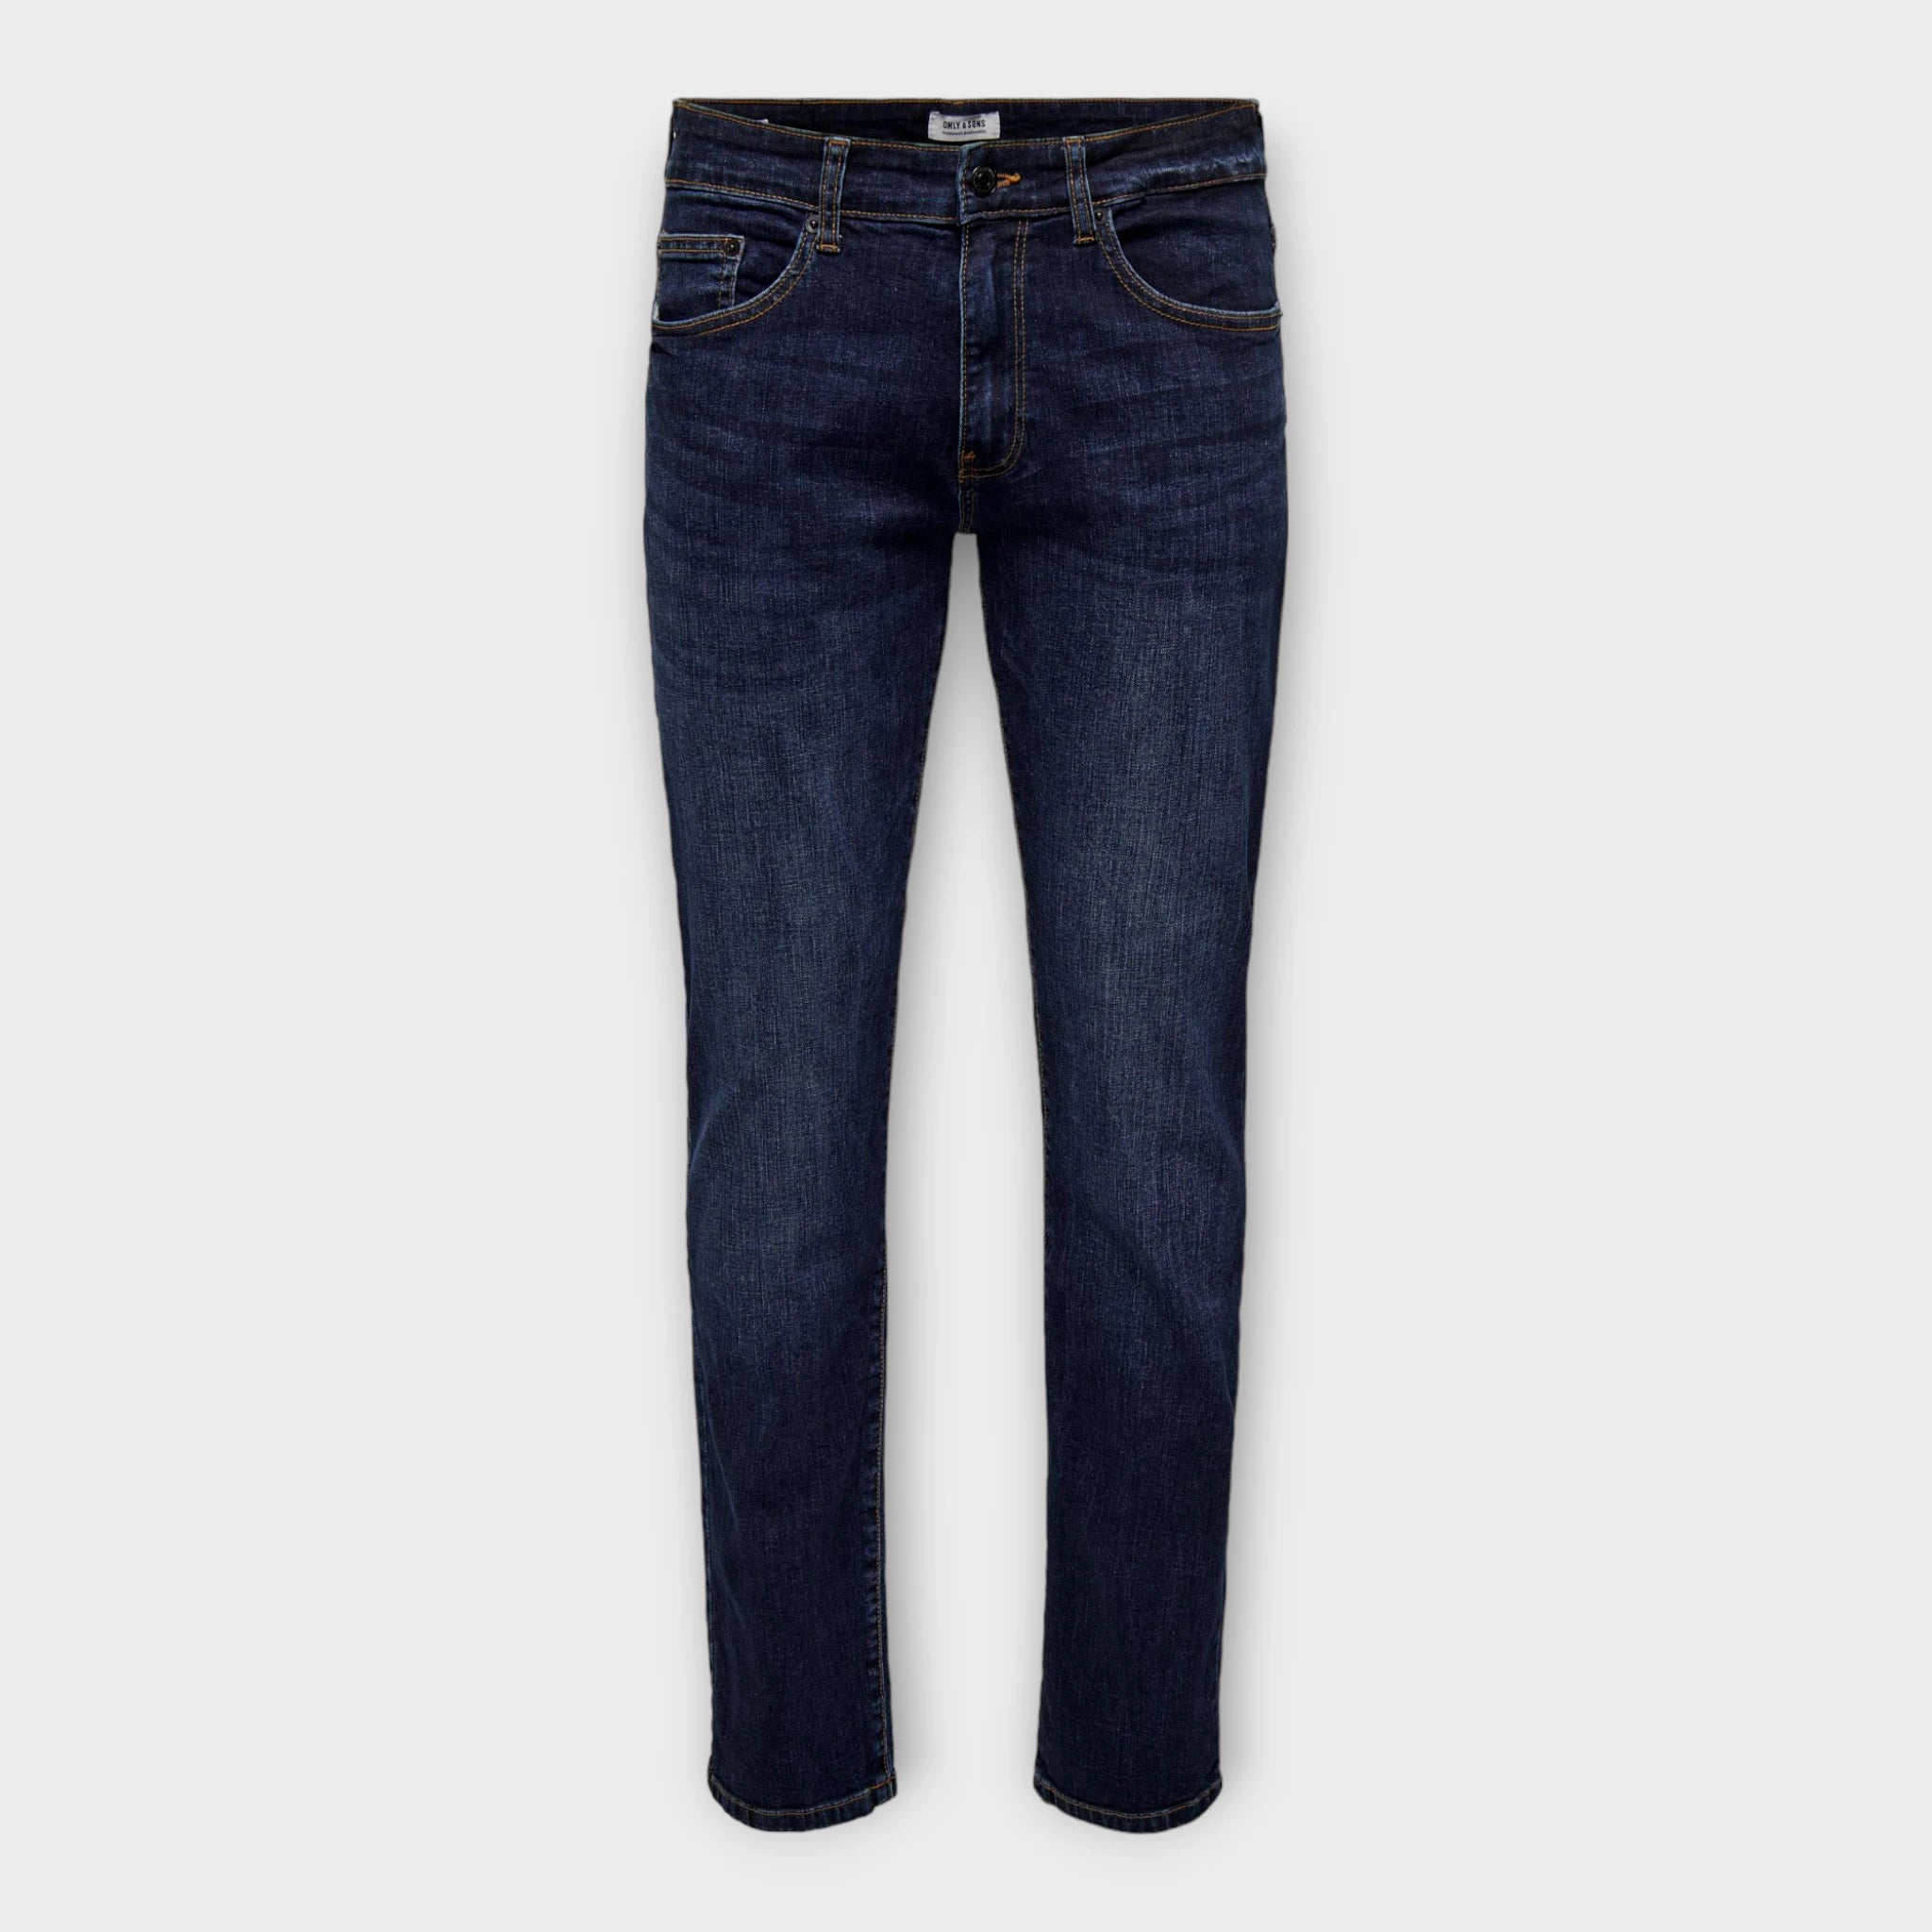 Weft Reg Dark Blue, regular fitted mørkeblå jeans fra Only and Sons. Her set forfra.